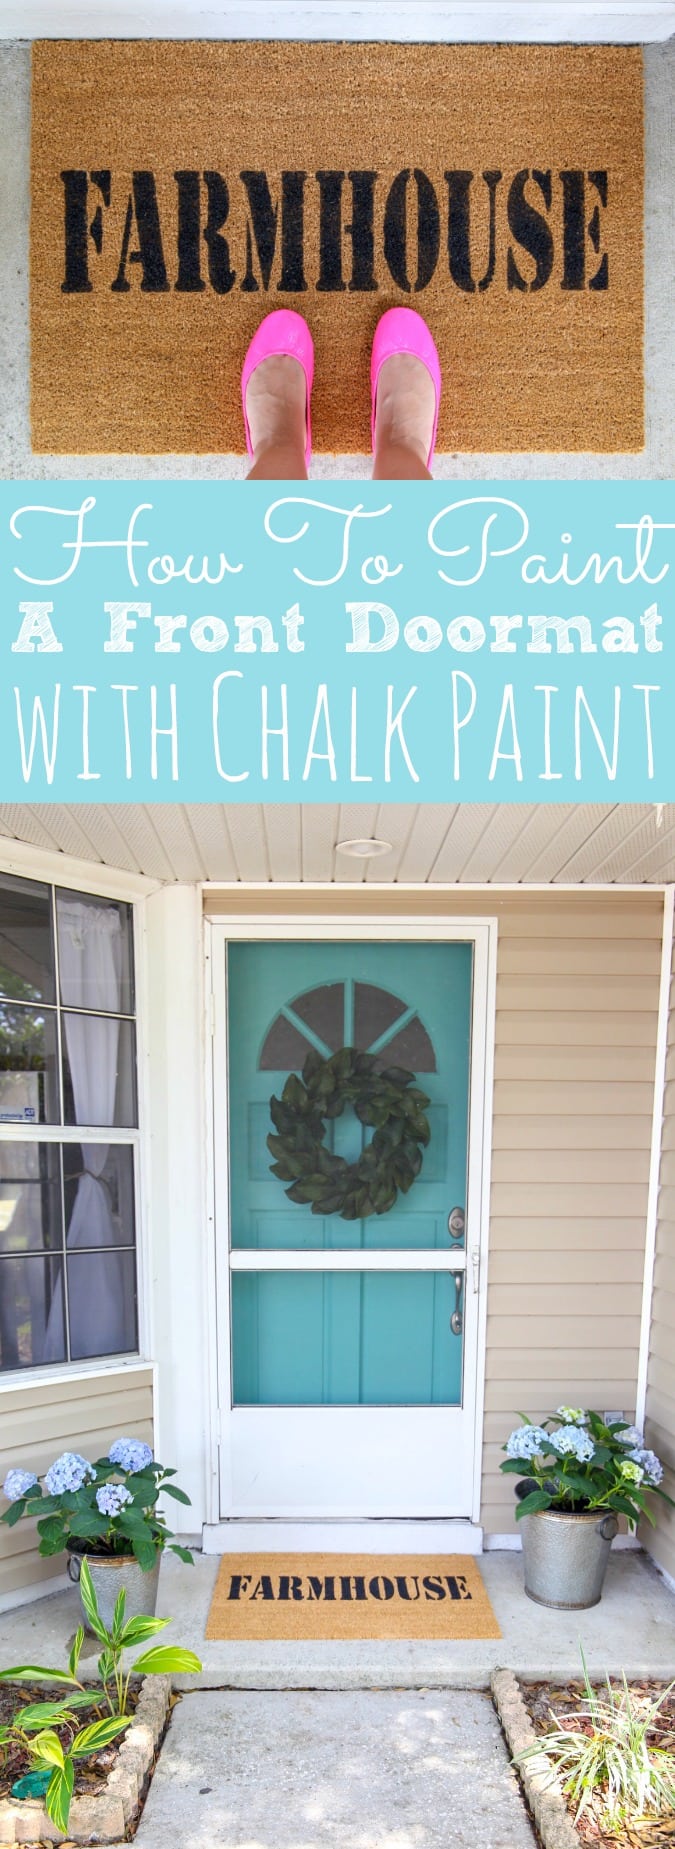 DIY Custom Doormat With Chalk Paint